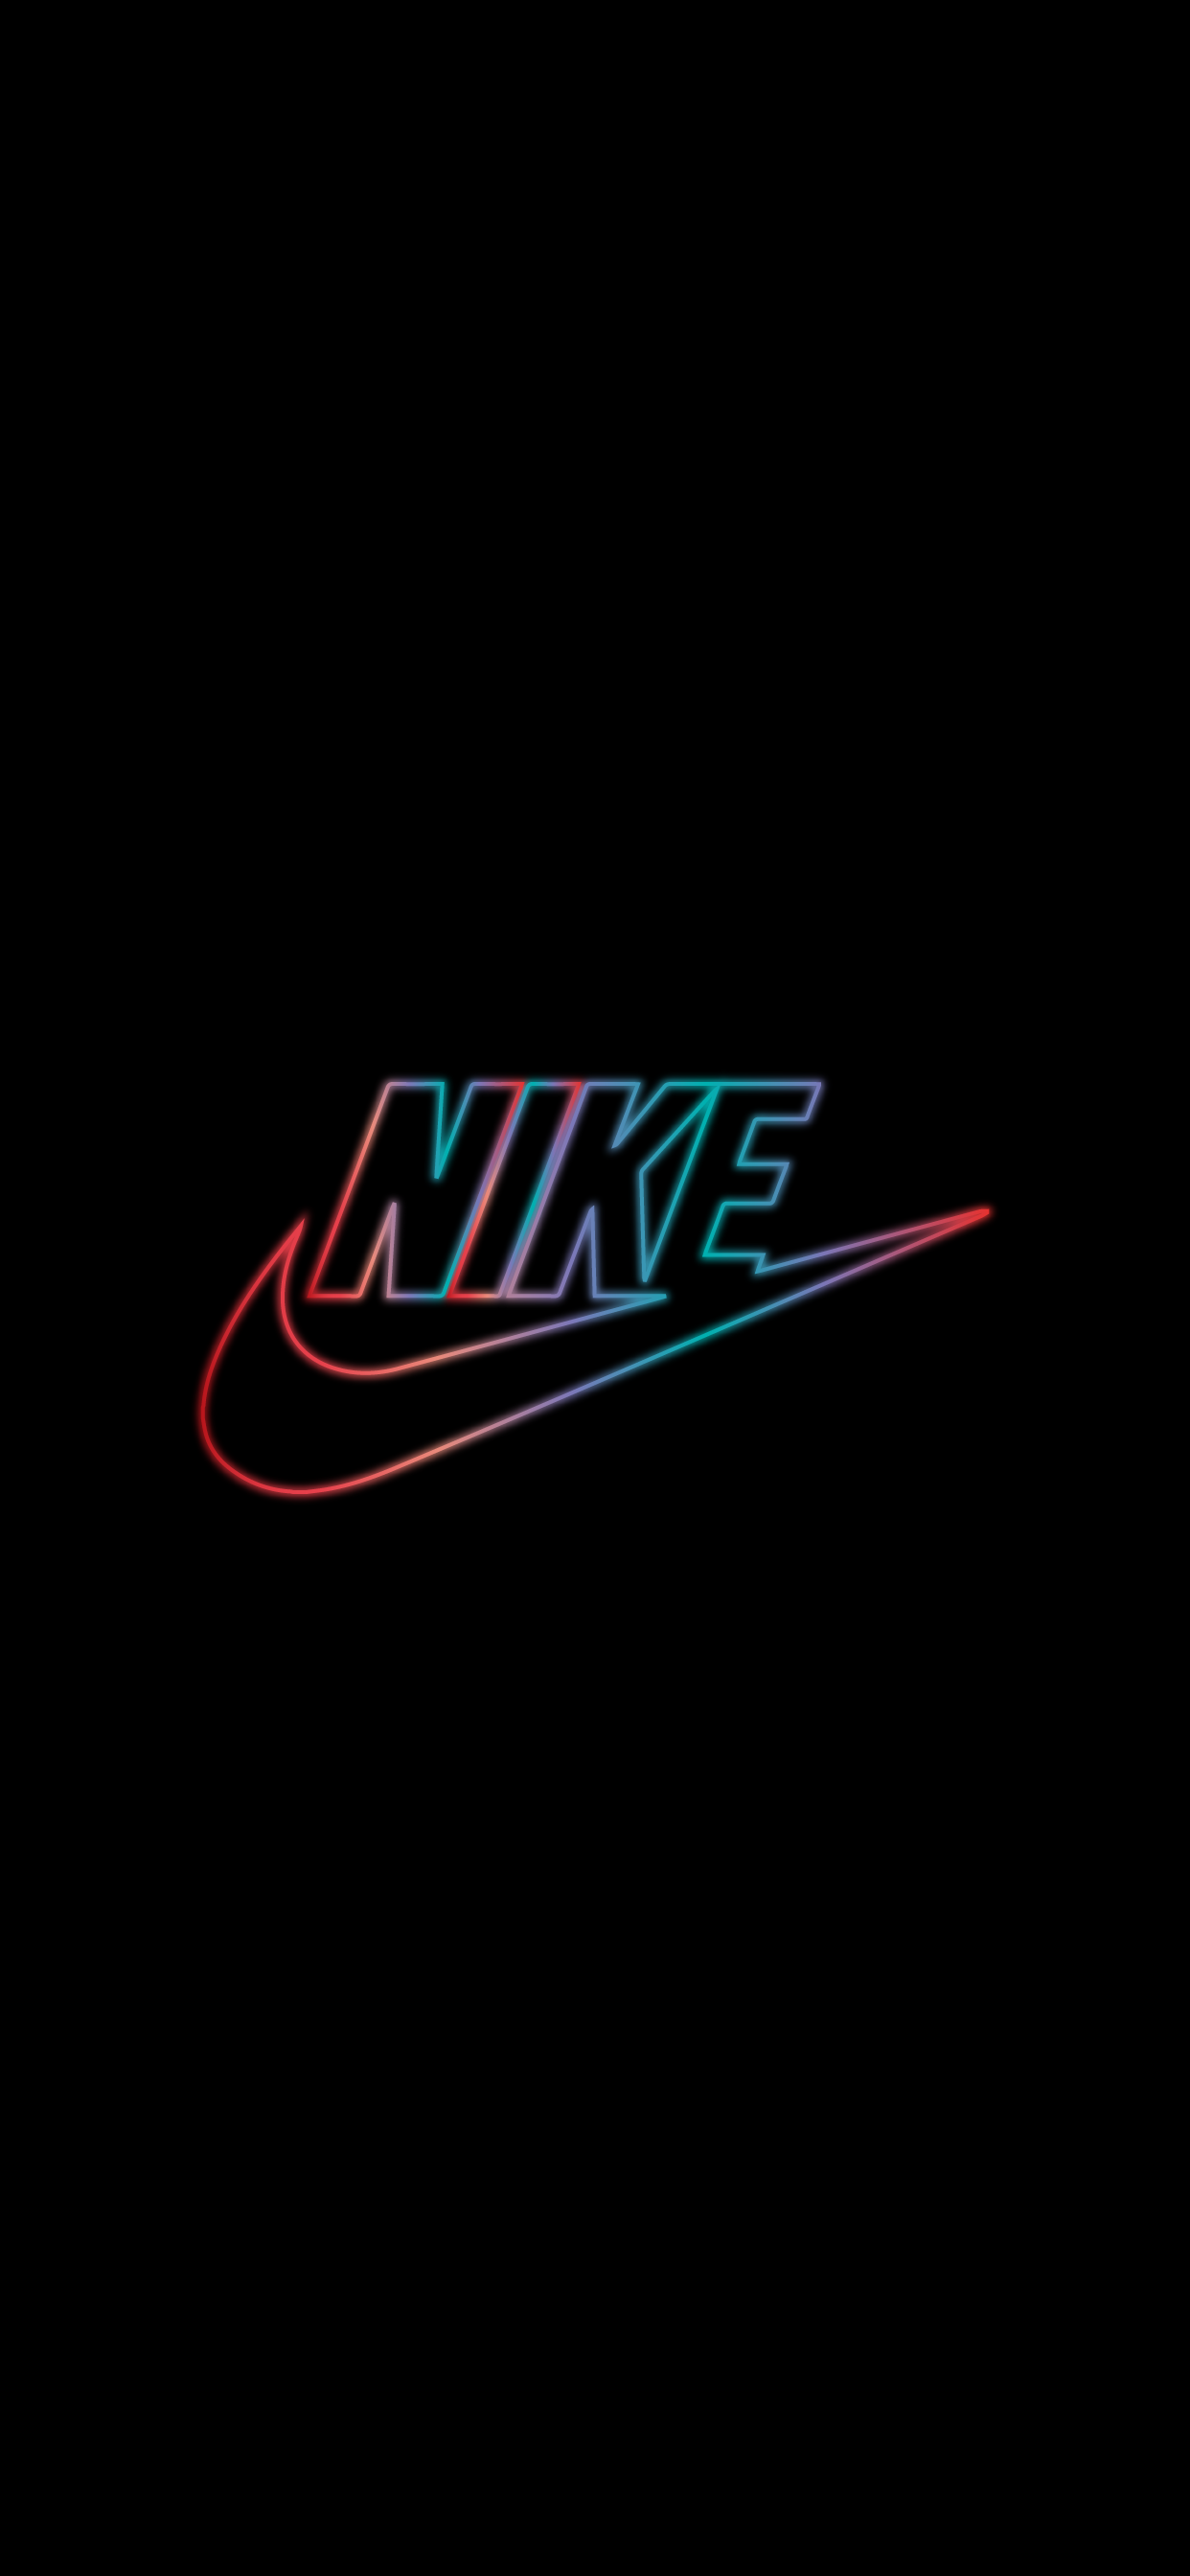 Nike iphone wallpaper